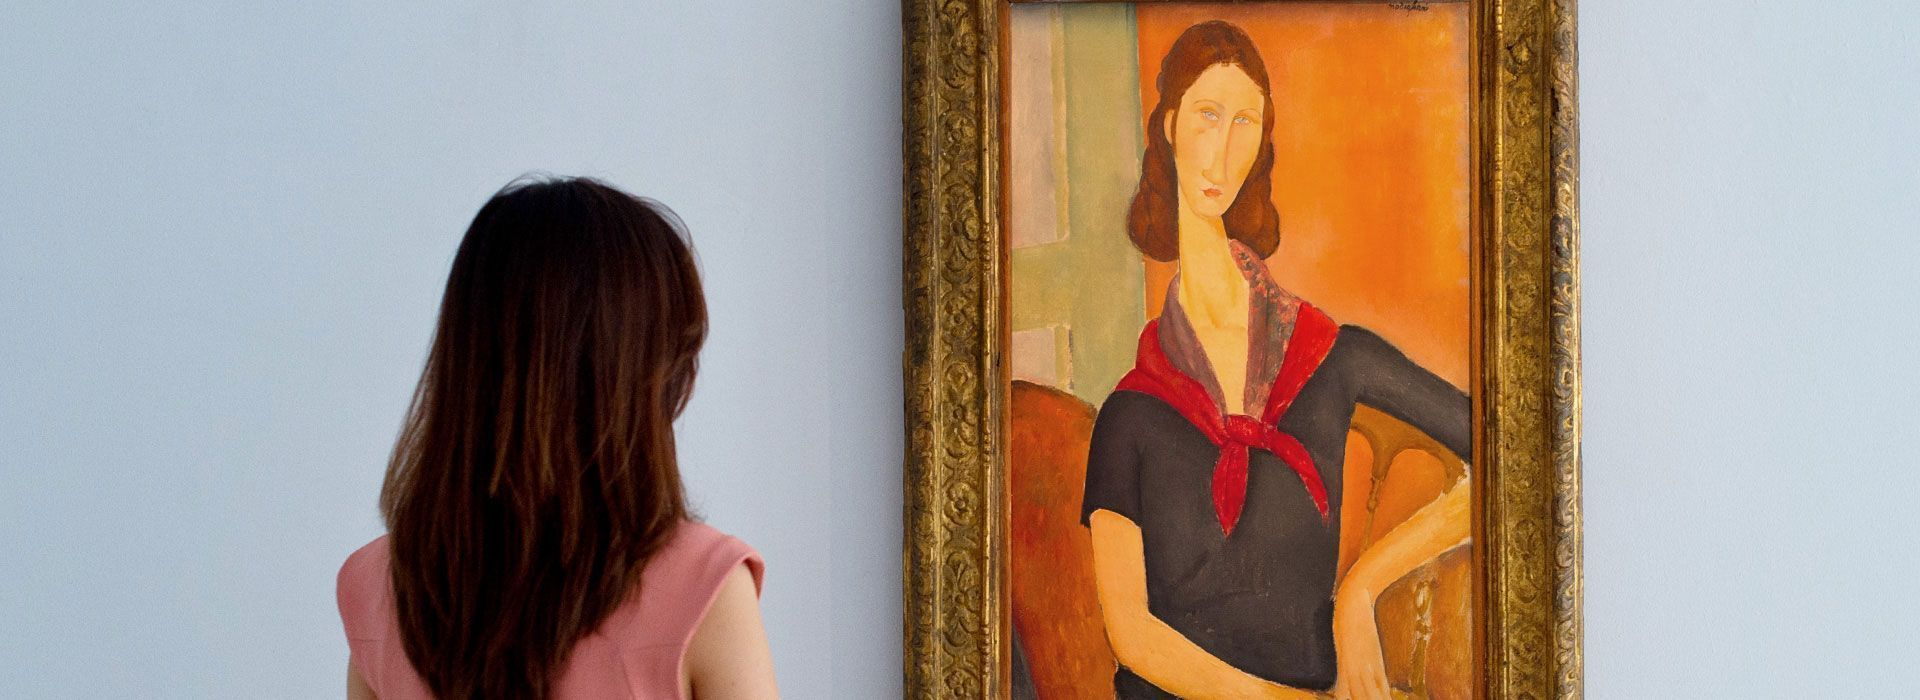 Известный портрет Жанны Эбютерн кисти Модильяни выставили на Sotheby’s